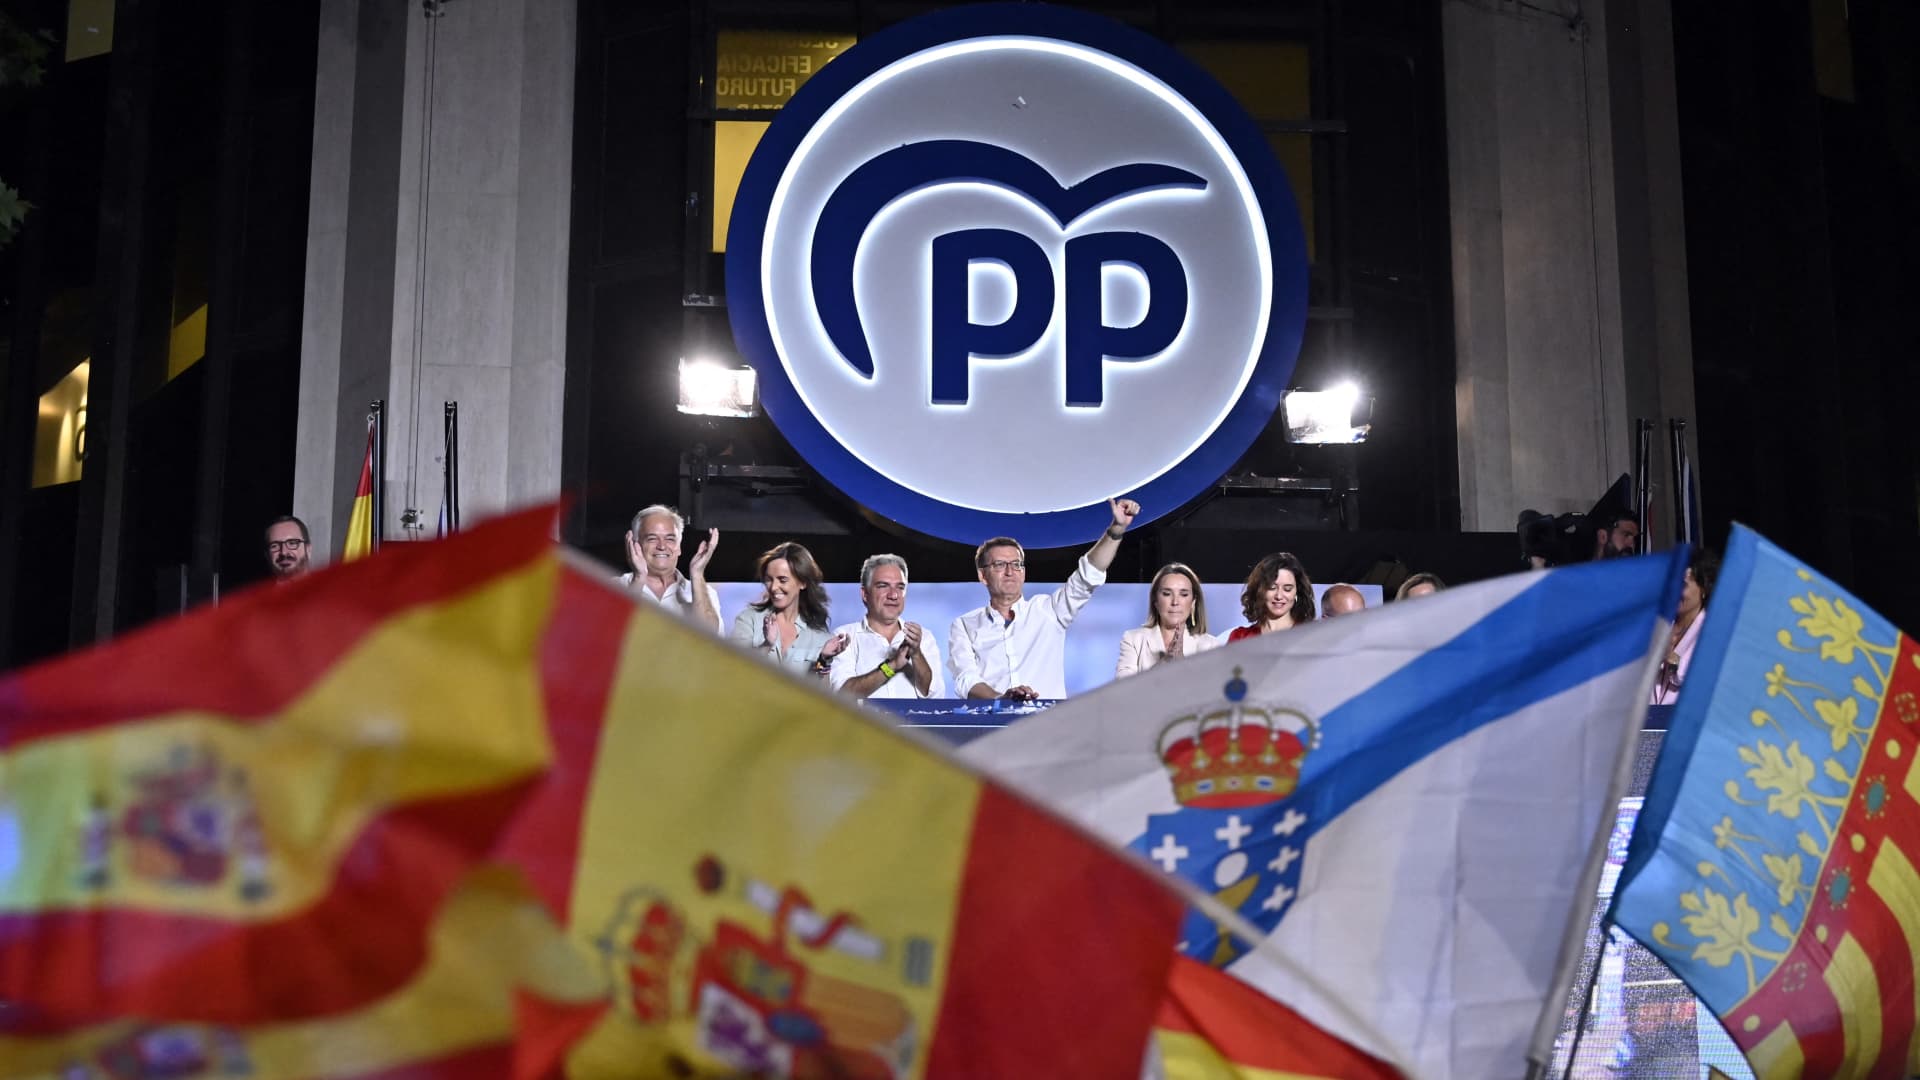 การเลือกตั้งของสเปนจบลงโดยไม่มีเสียงข้างมากอย่างชัดเจน ทำให้ประเทศตกอยู่ในสภาวะแวดล้อมทางการเมือง